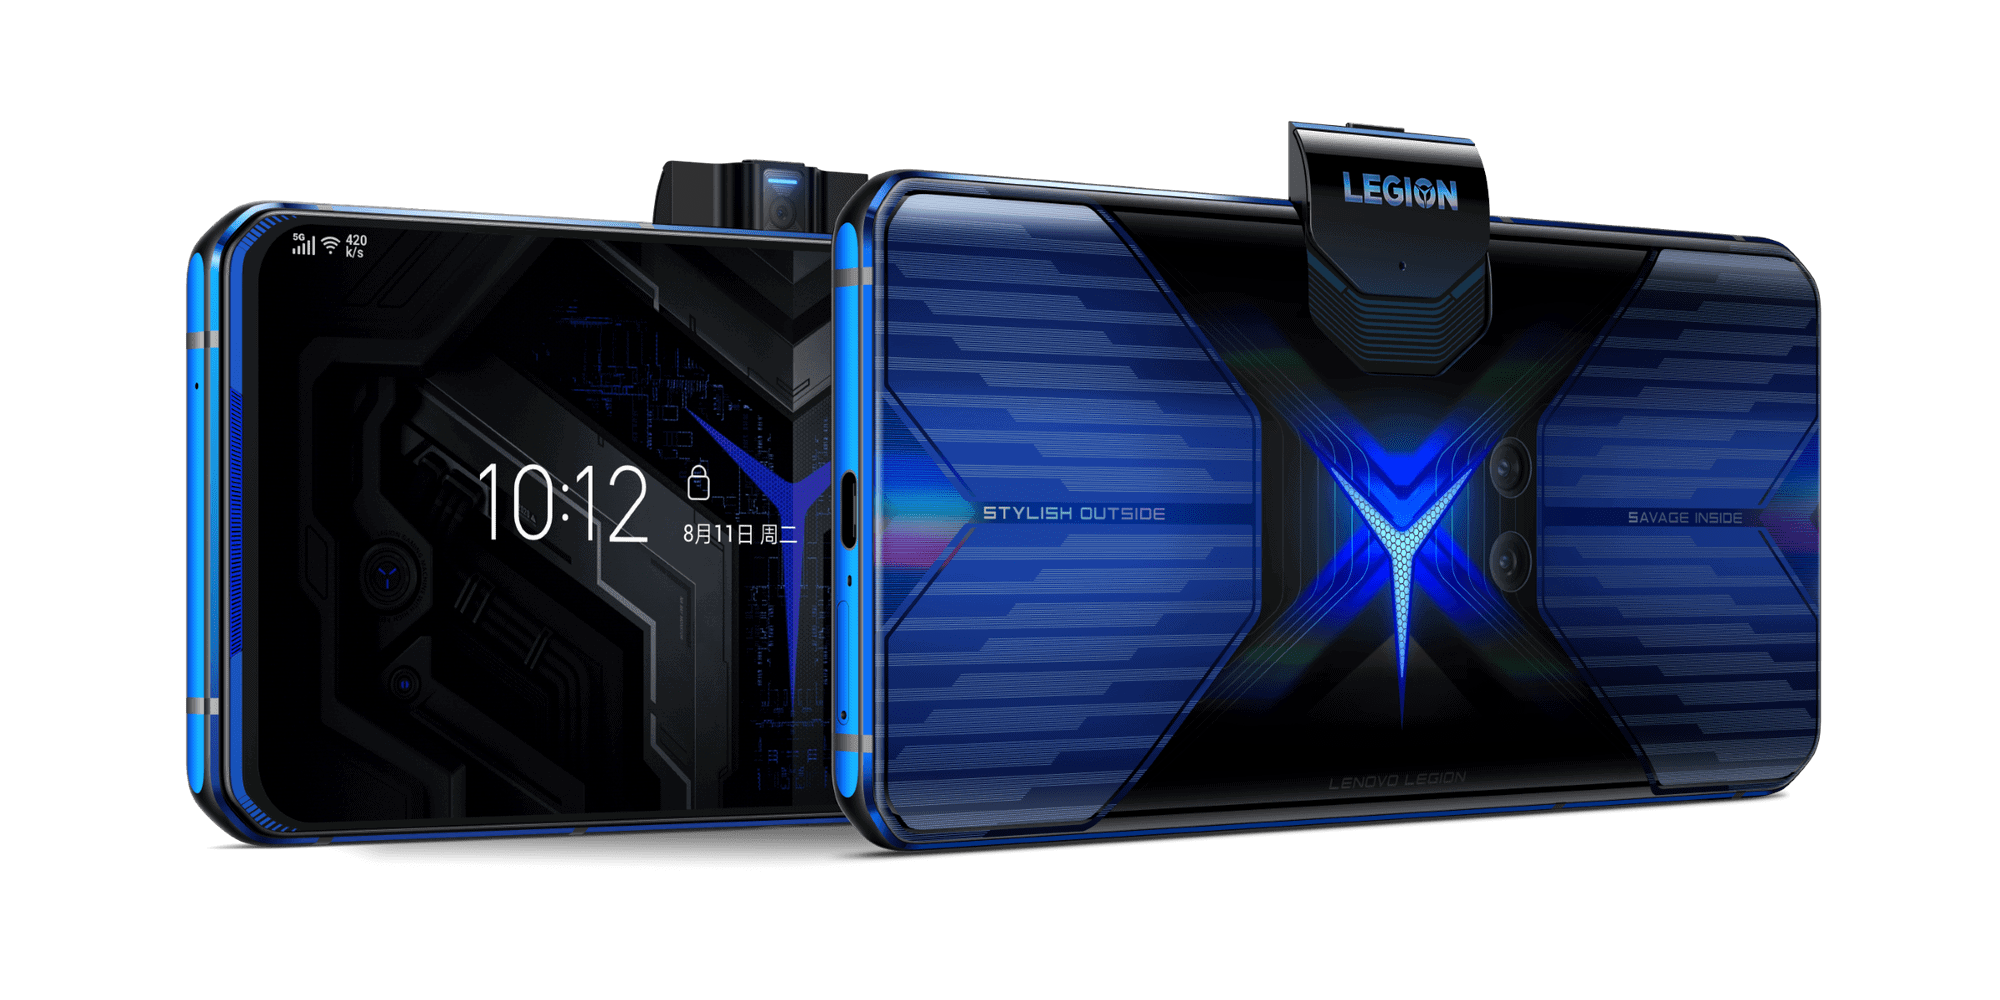 เลอโนโวเปิดตัว Lenovo Legion Phone Duel ปฐมบทแห่ง Legion เกมมิ่งสมาร์ทโฟน ขั้นสุดแห่งพลังของการเล่นเกมบนมือถือ 1